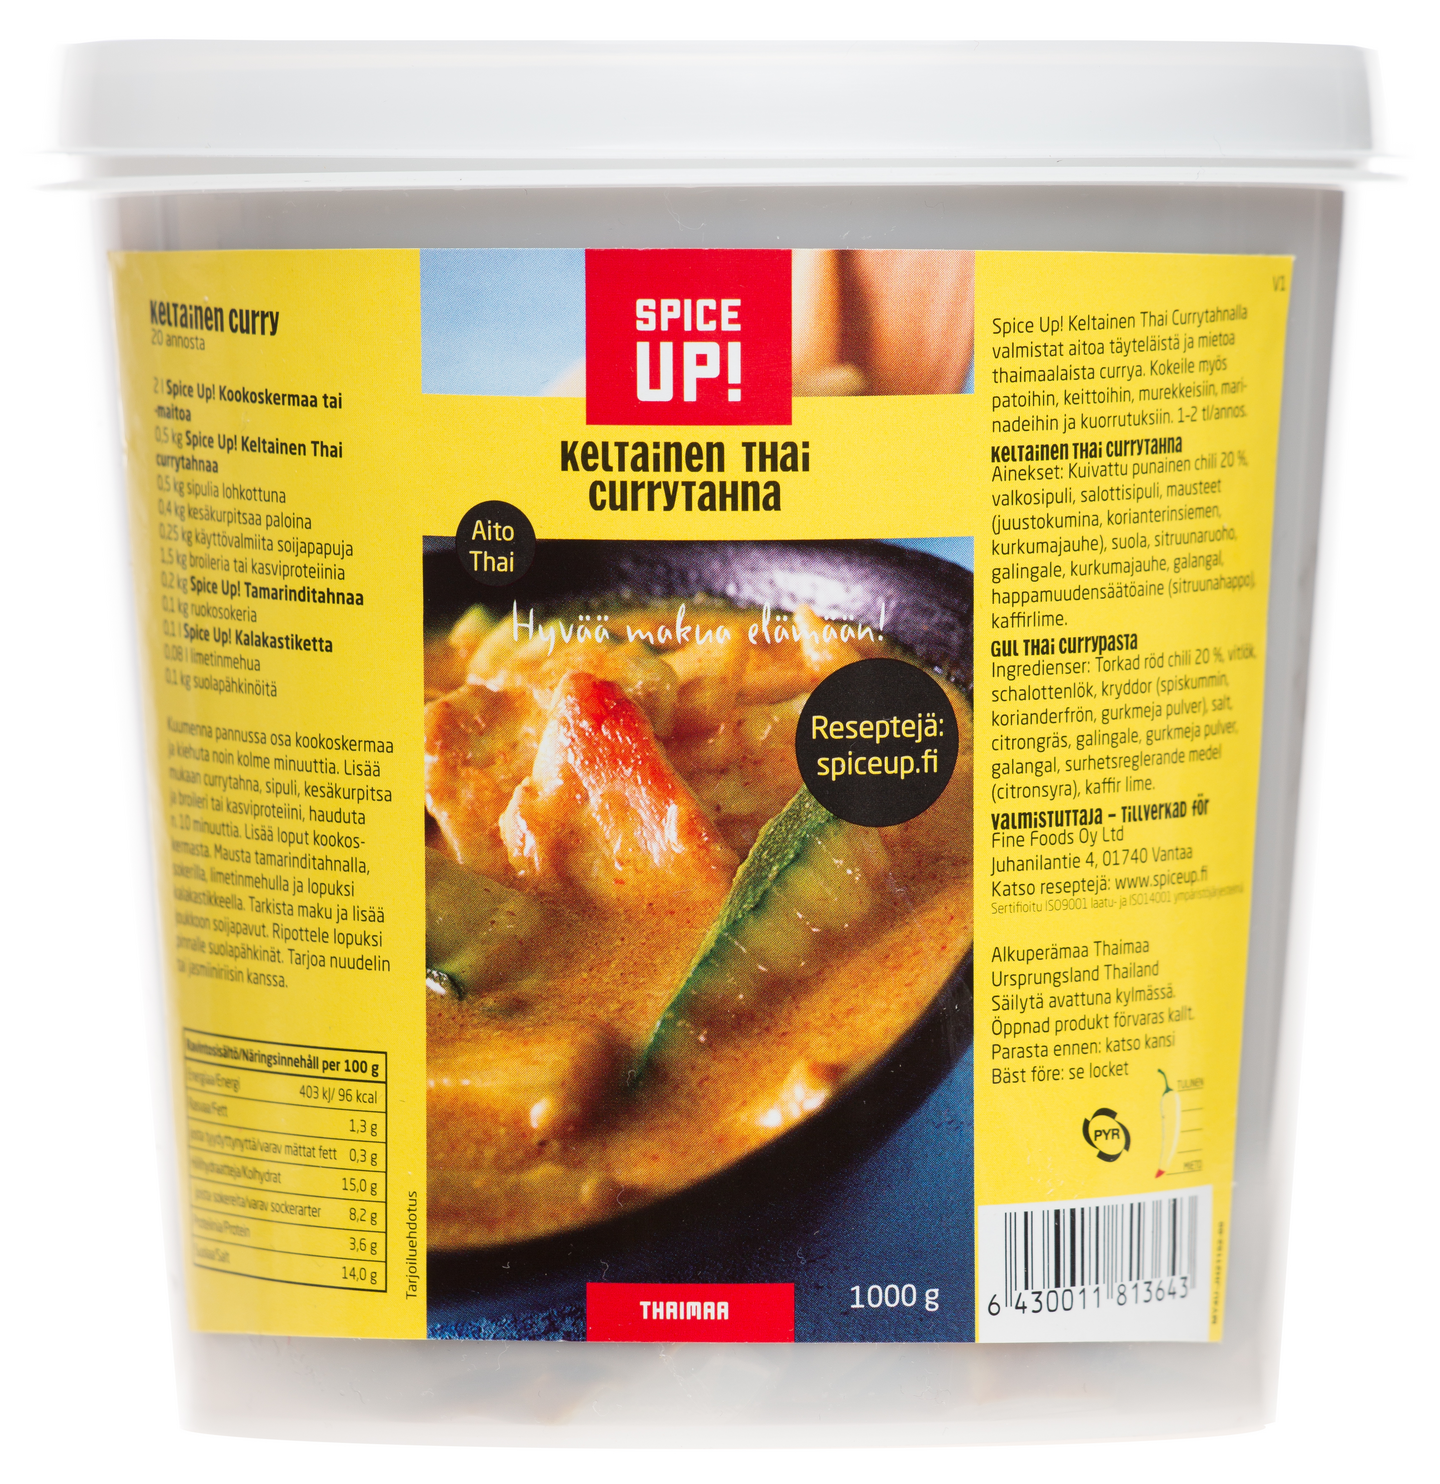 Spice Up! Keltainen thai currytahna 1000g